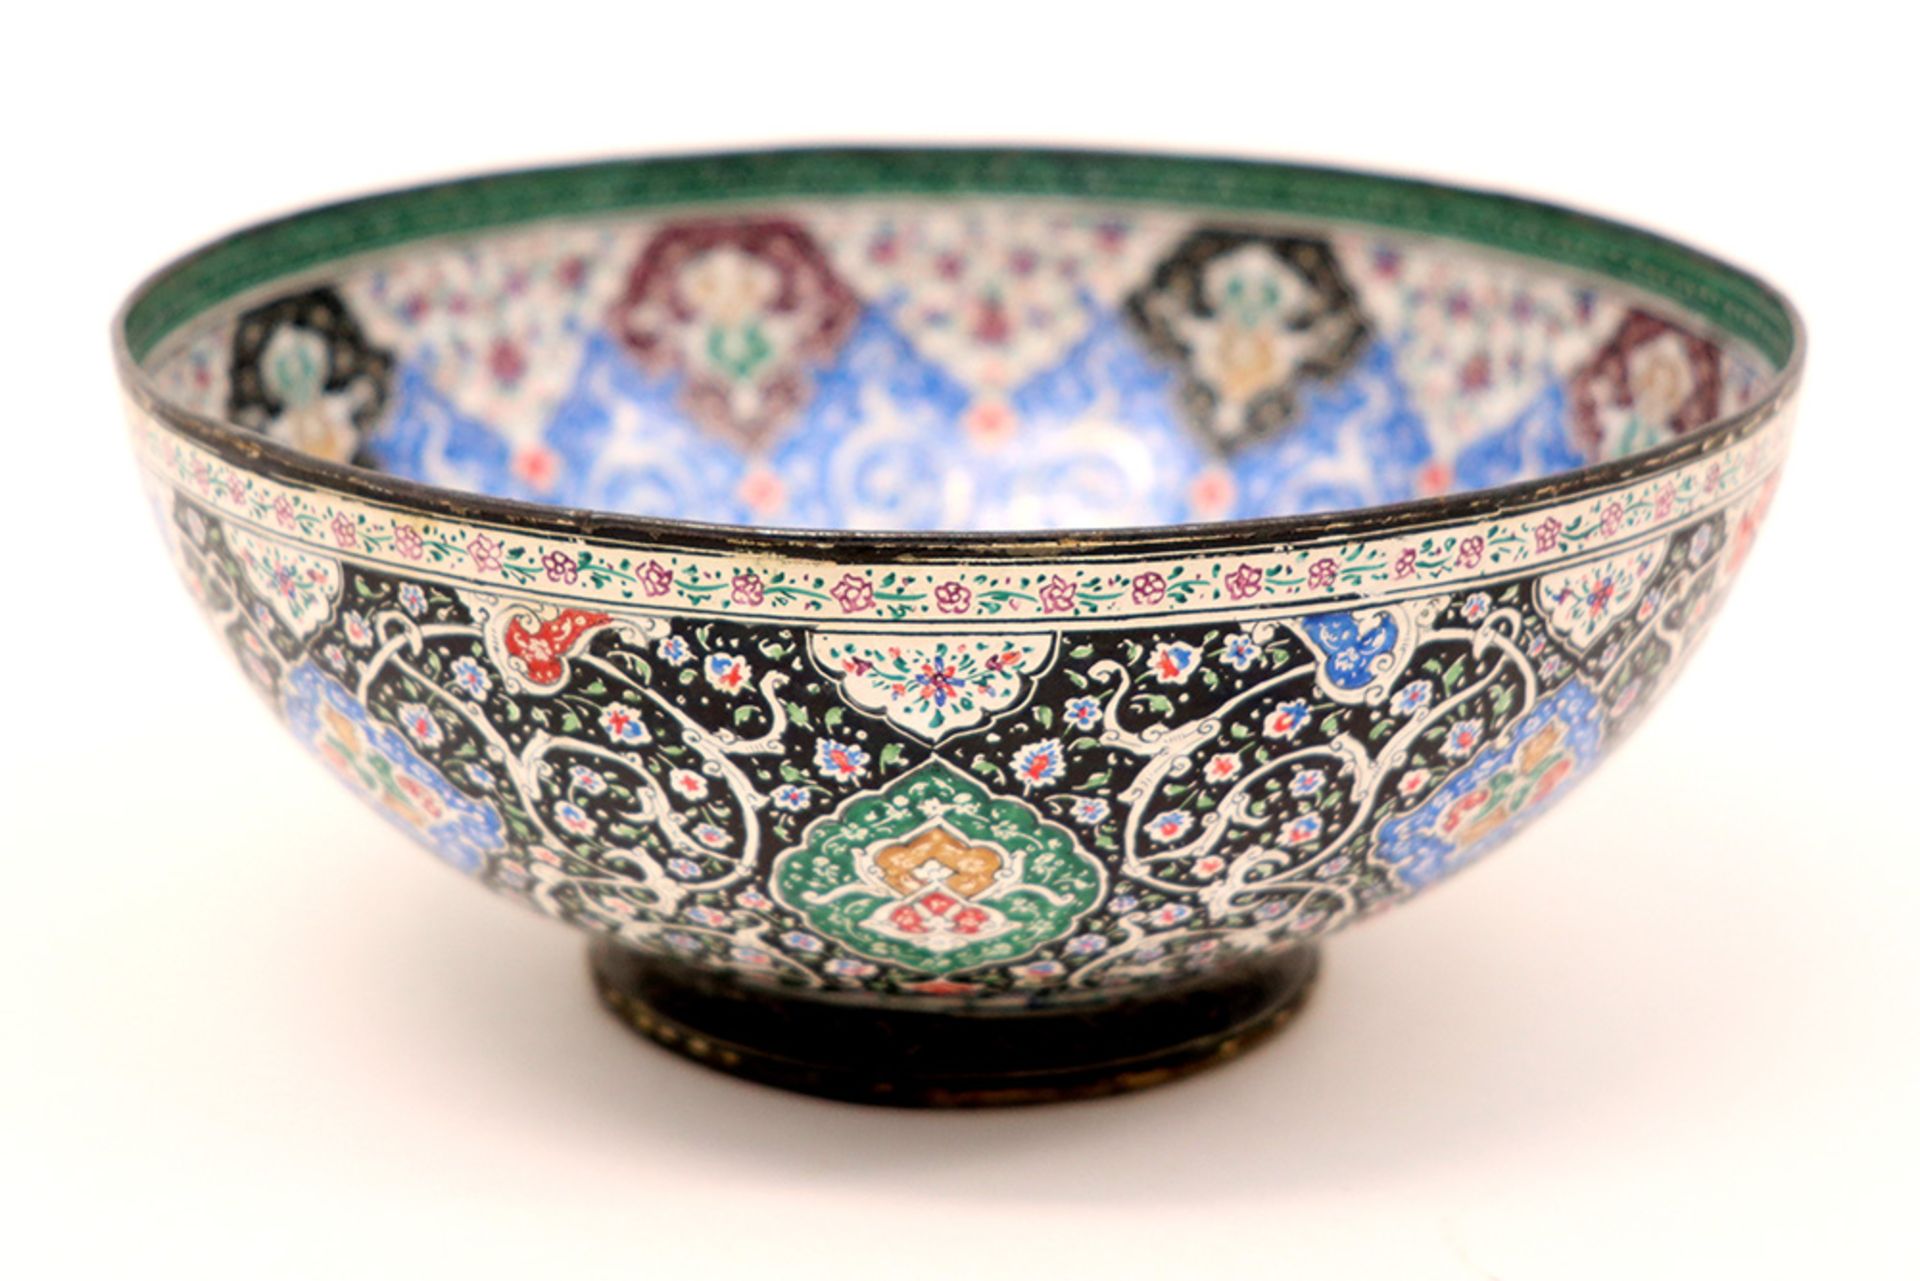 Persian bowl in enamelled metal || Perzische bowl in geëmailleerd metaal met een fijnuitgwerkt